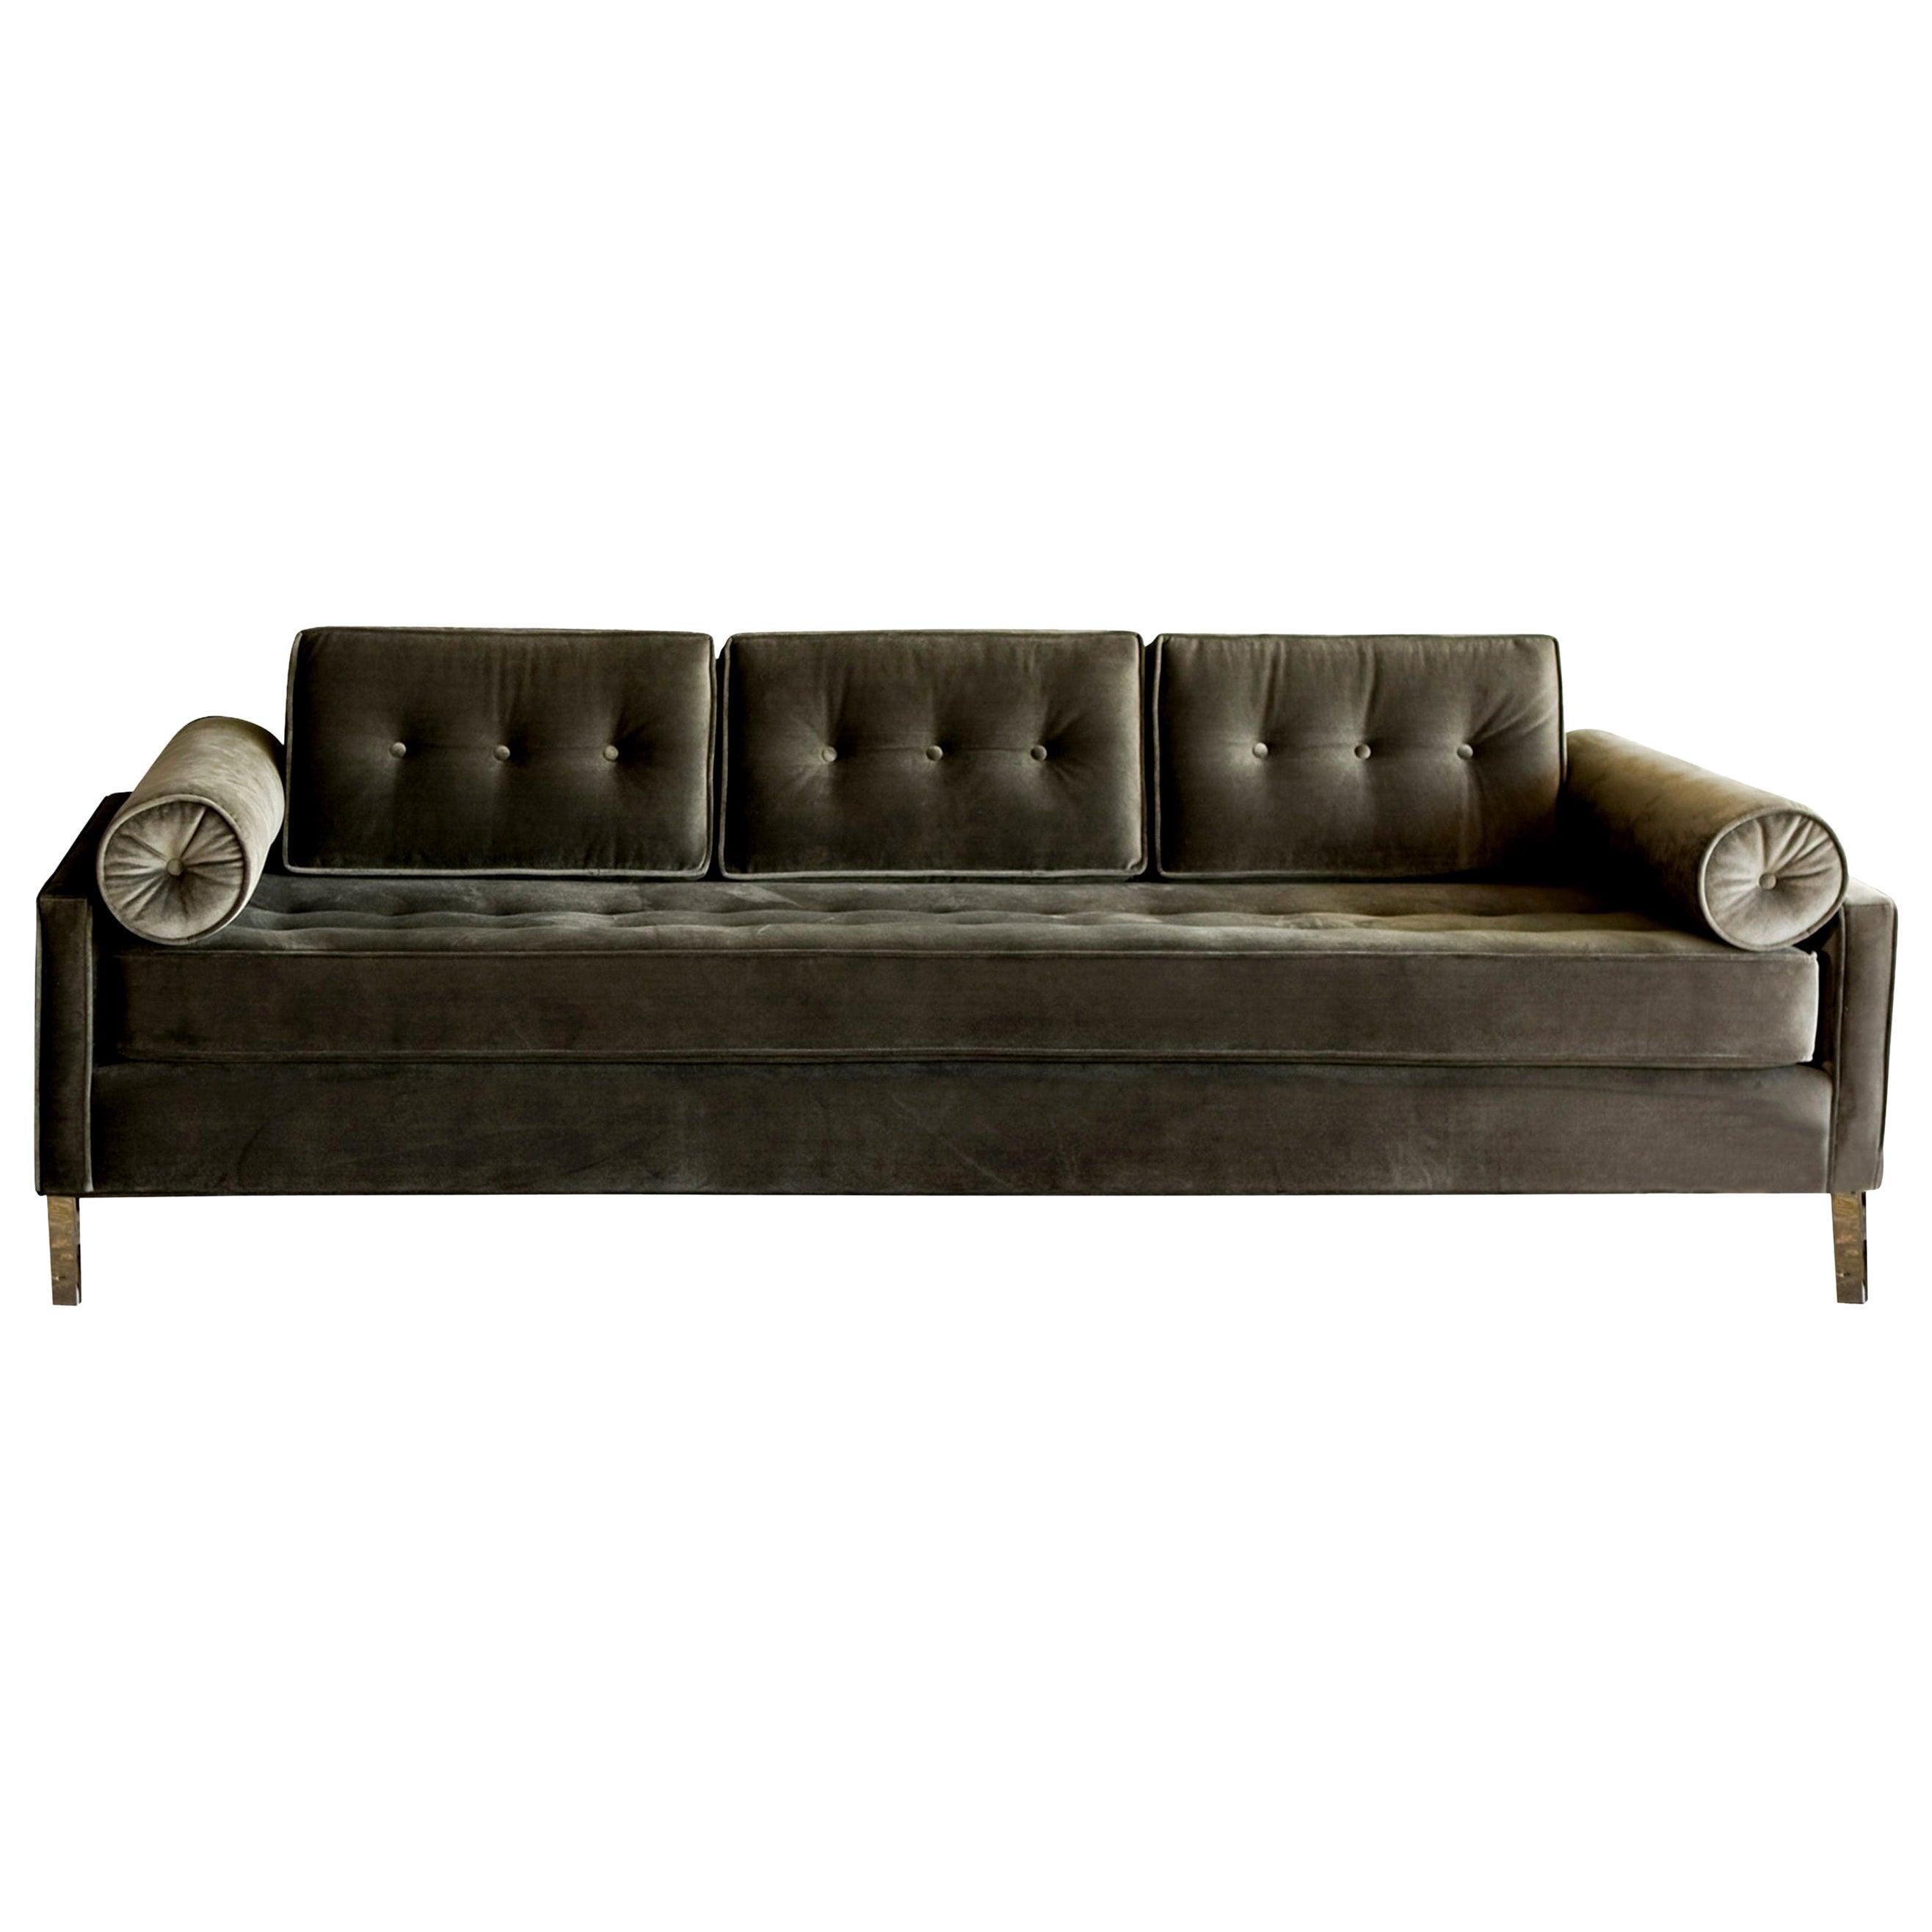 Élégant et stylisé, le canapé case #1 est épuré et confortable. Rembourré dans un velours durable haut de gamme de couleur étain.

Le canapé peut être personnalisé à votre guise grâce à un large choix de couleurs de tissu et d'options.

Il peut